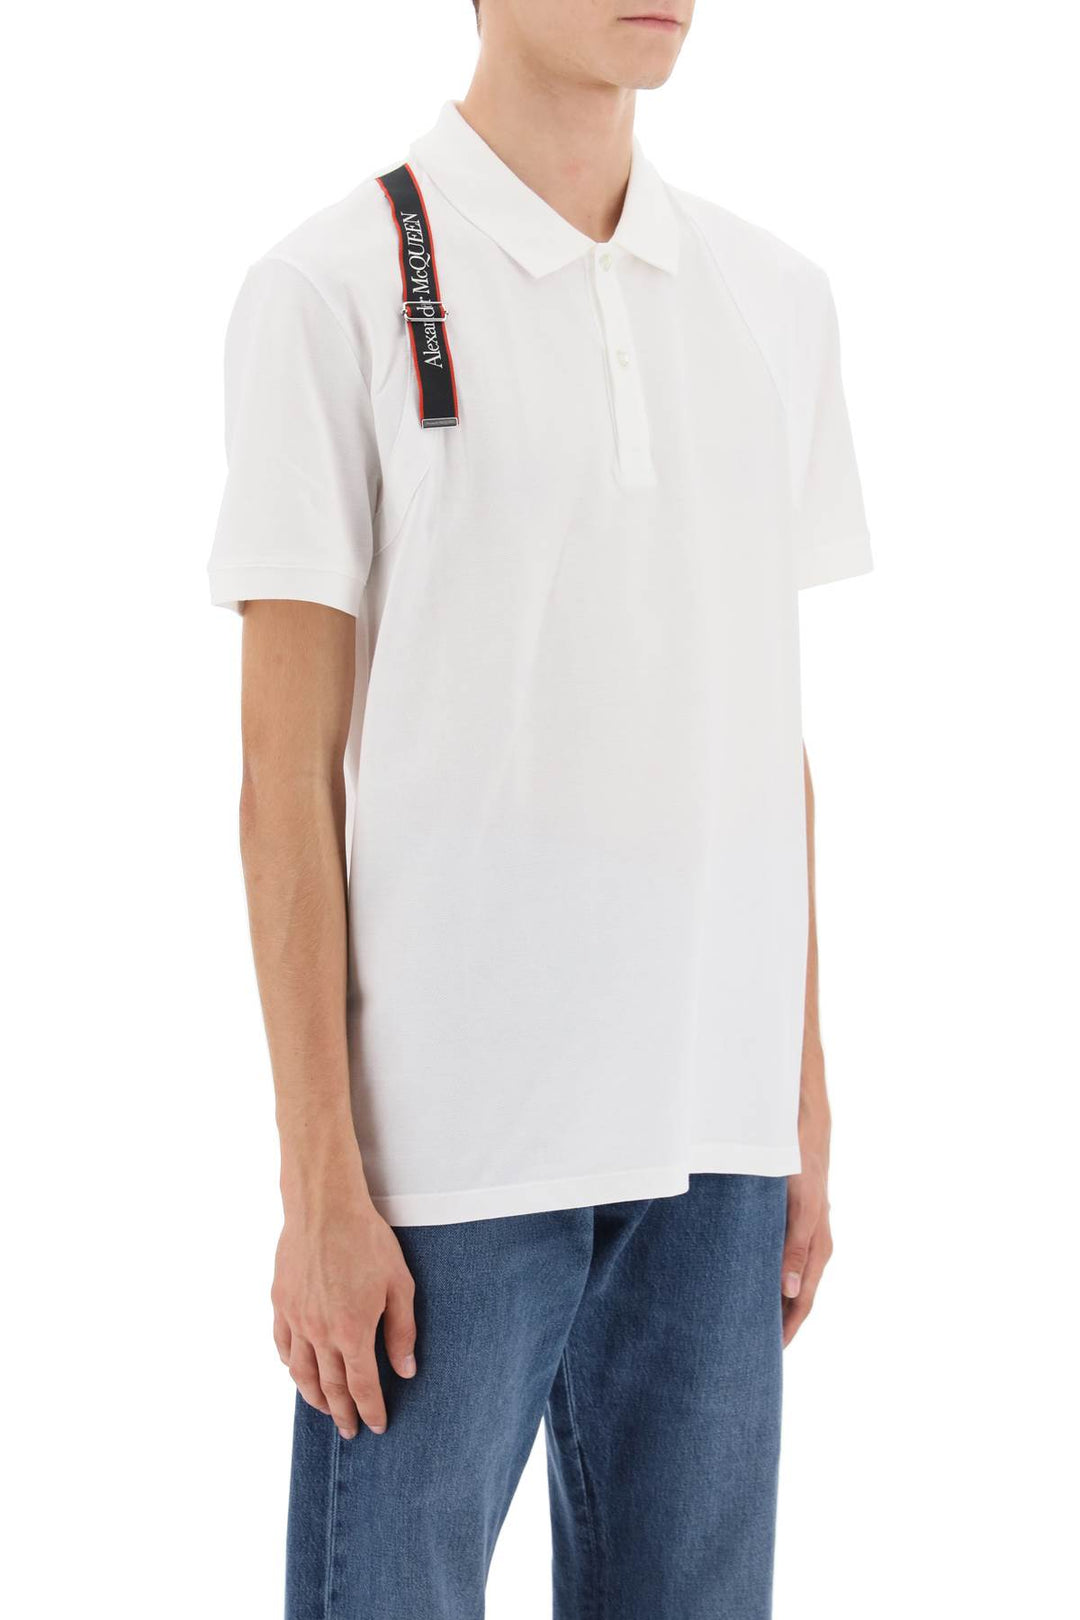 Alexander mcqueen harness polo shirt with selvedge logo-1